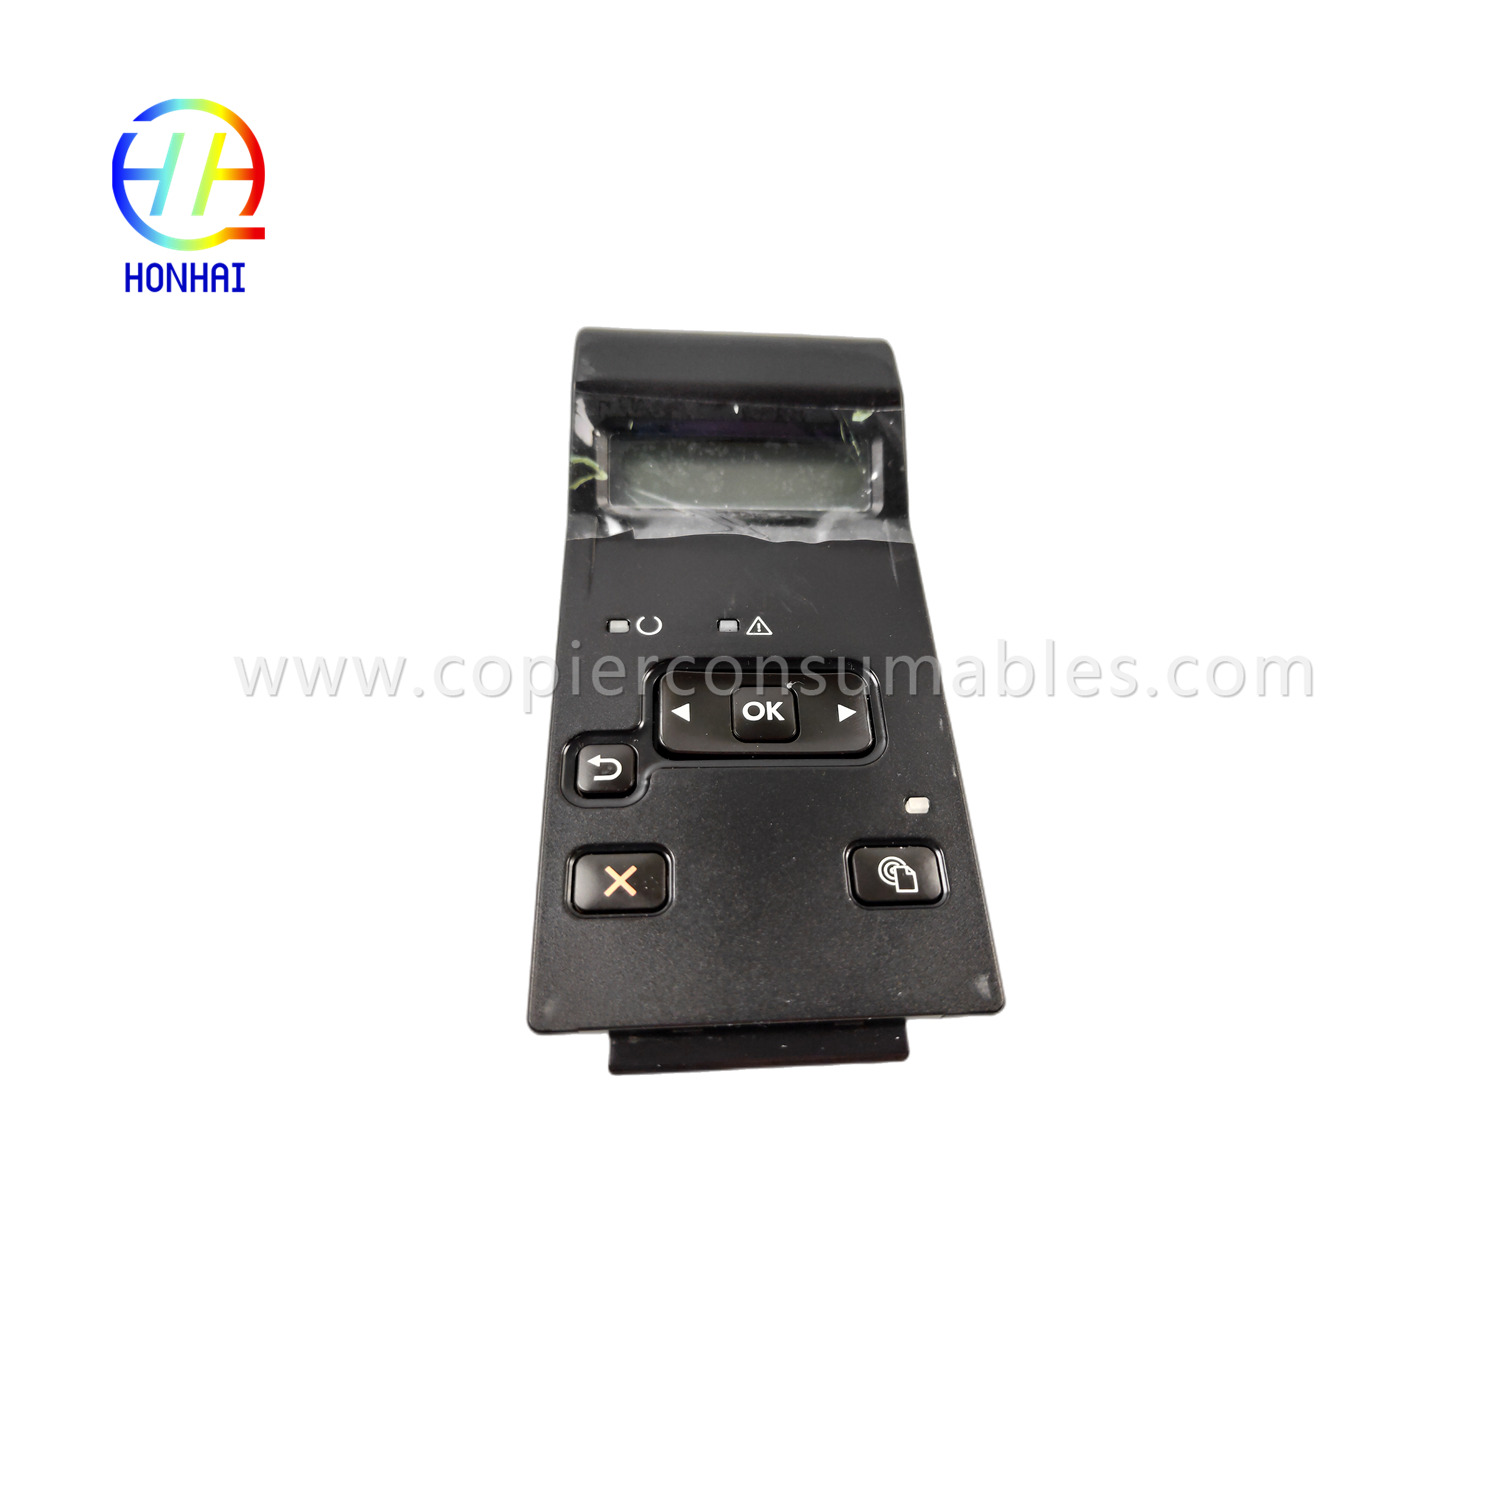 Kontrollpanel Touchscreen fir HP LaserJet 400 M401d M401dn M401n M401 m401 401d 401dn 401n (1)